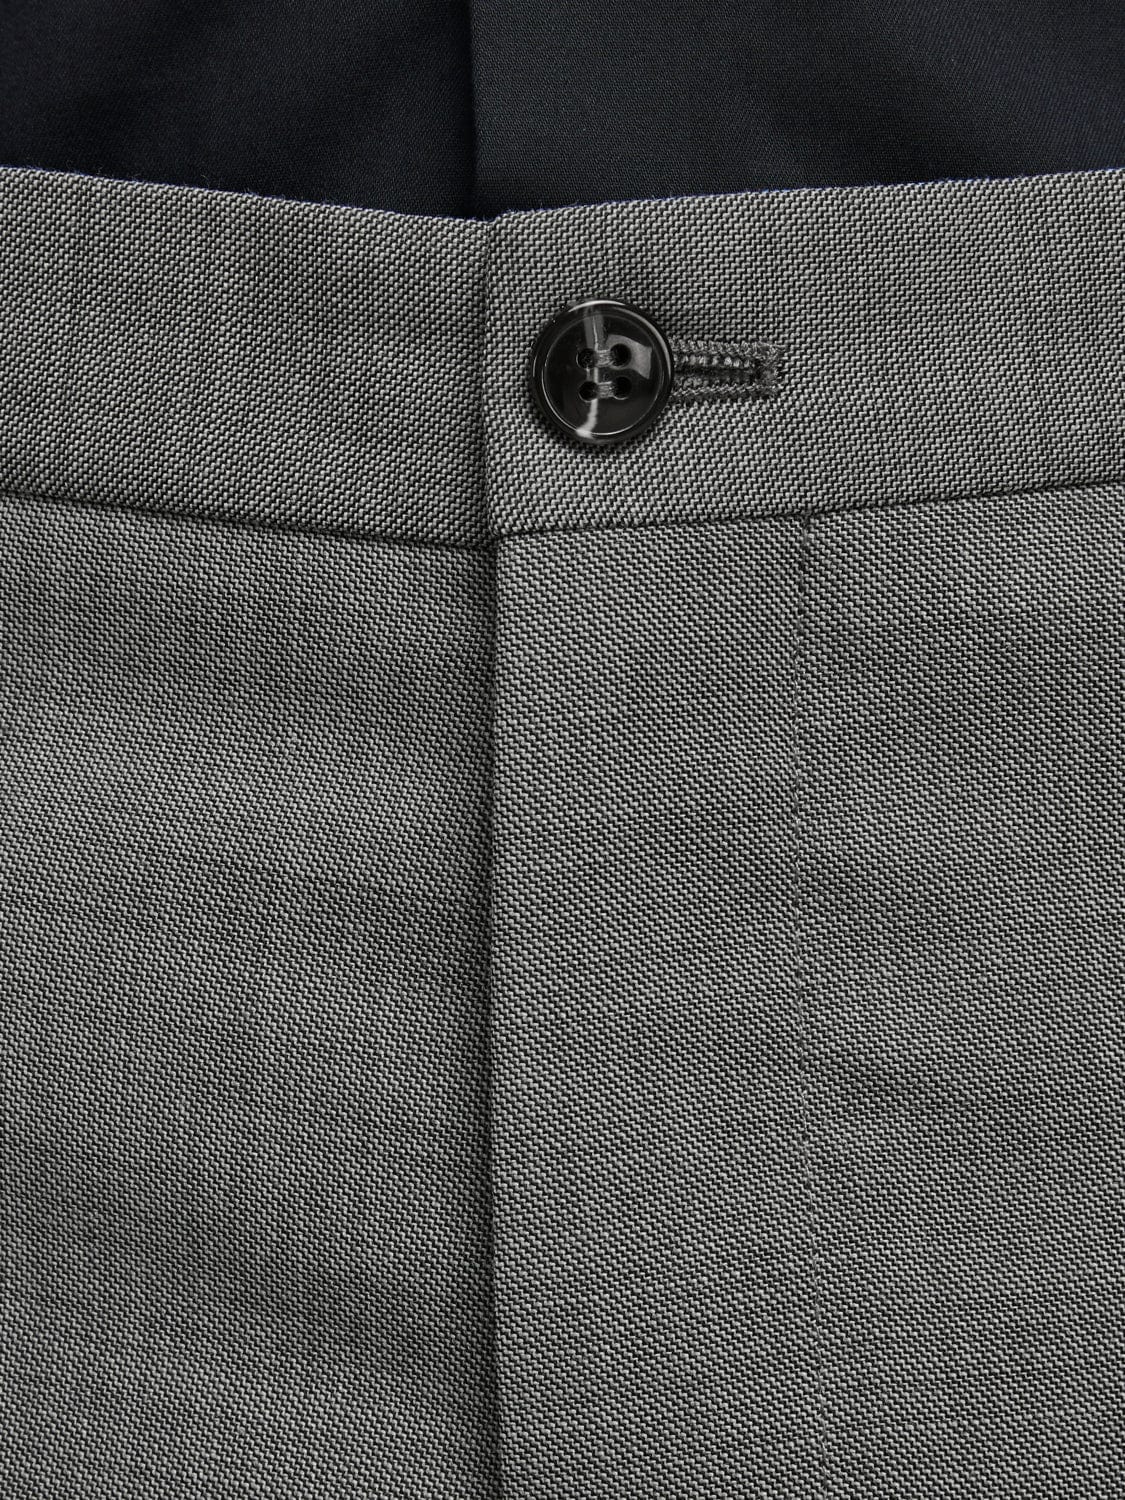 Pantalón de traje gris claro -JPRSOLARIS